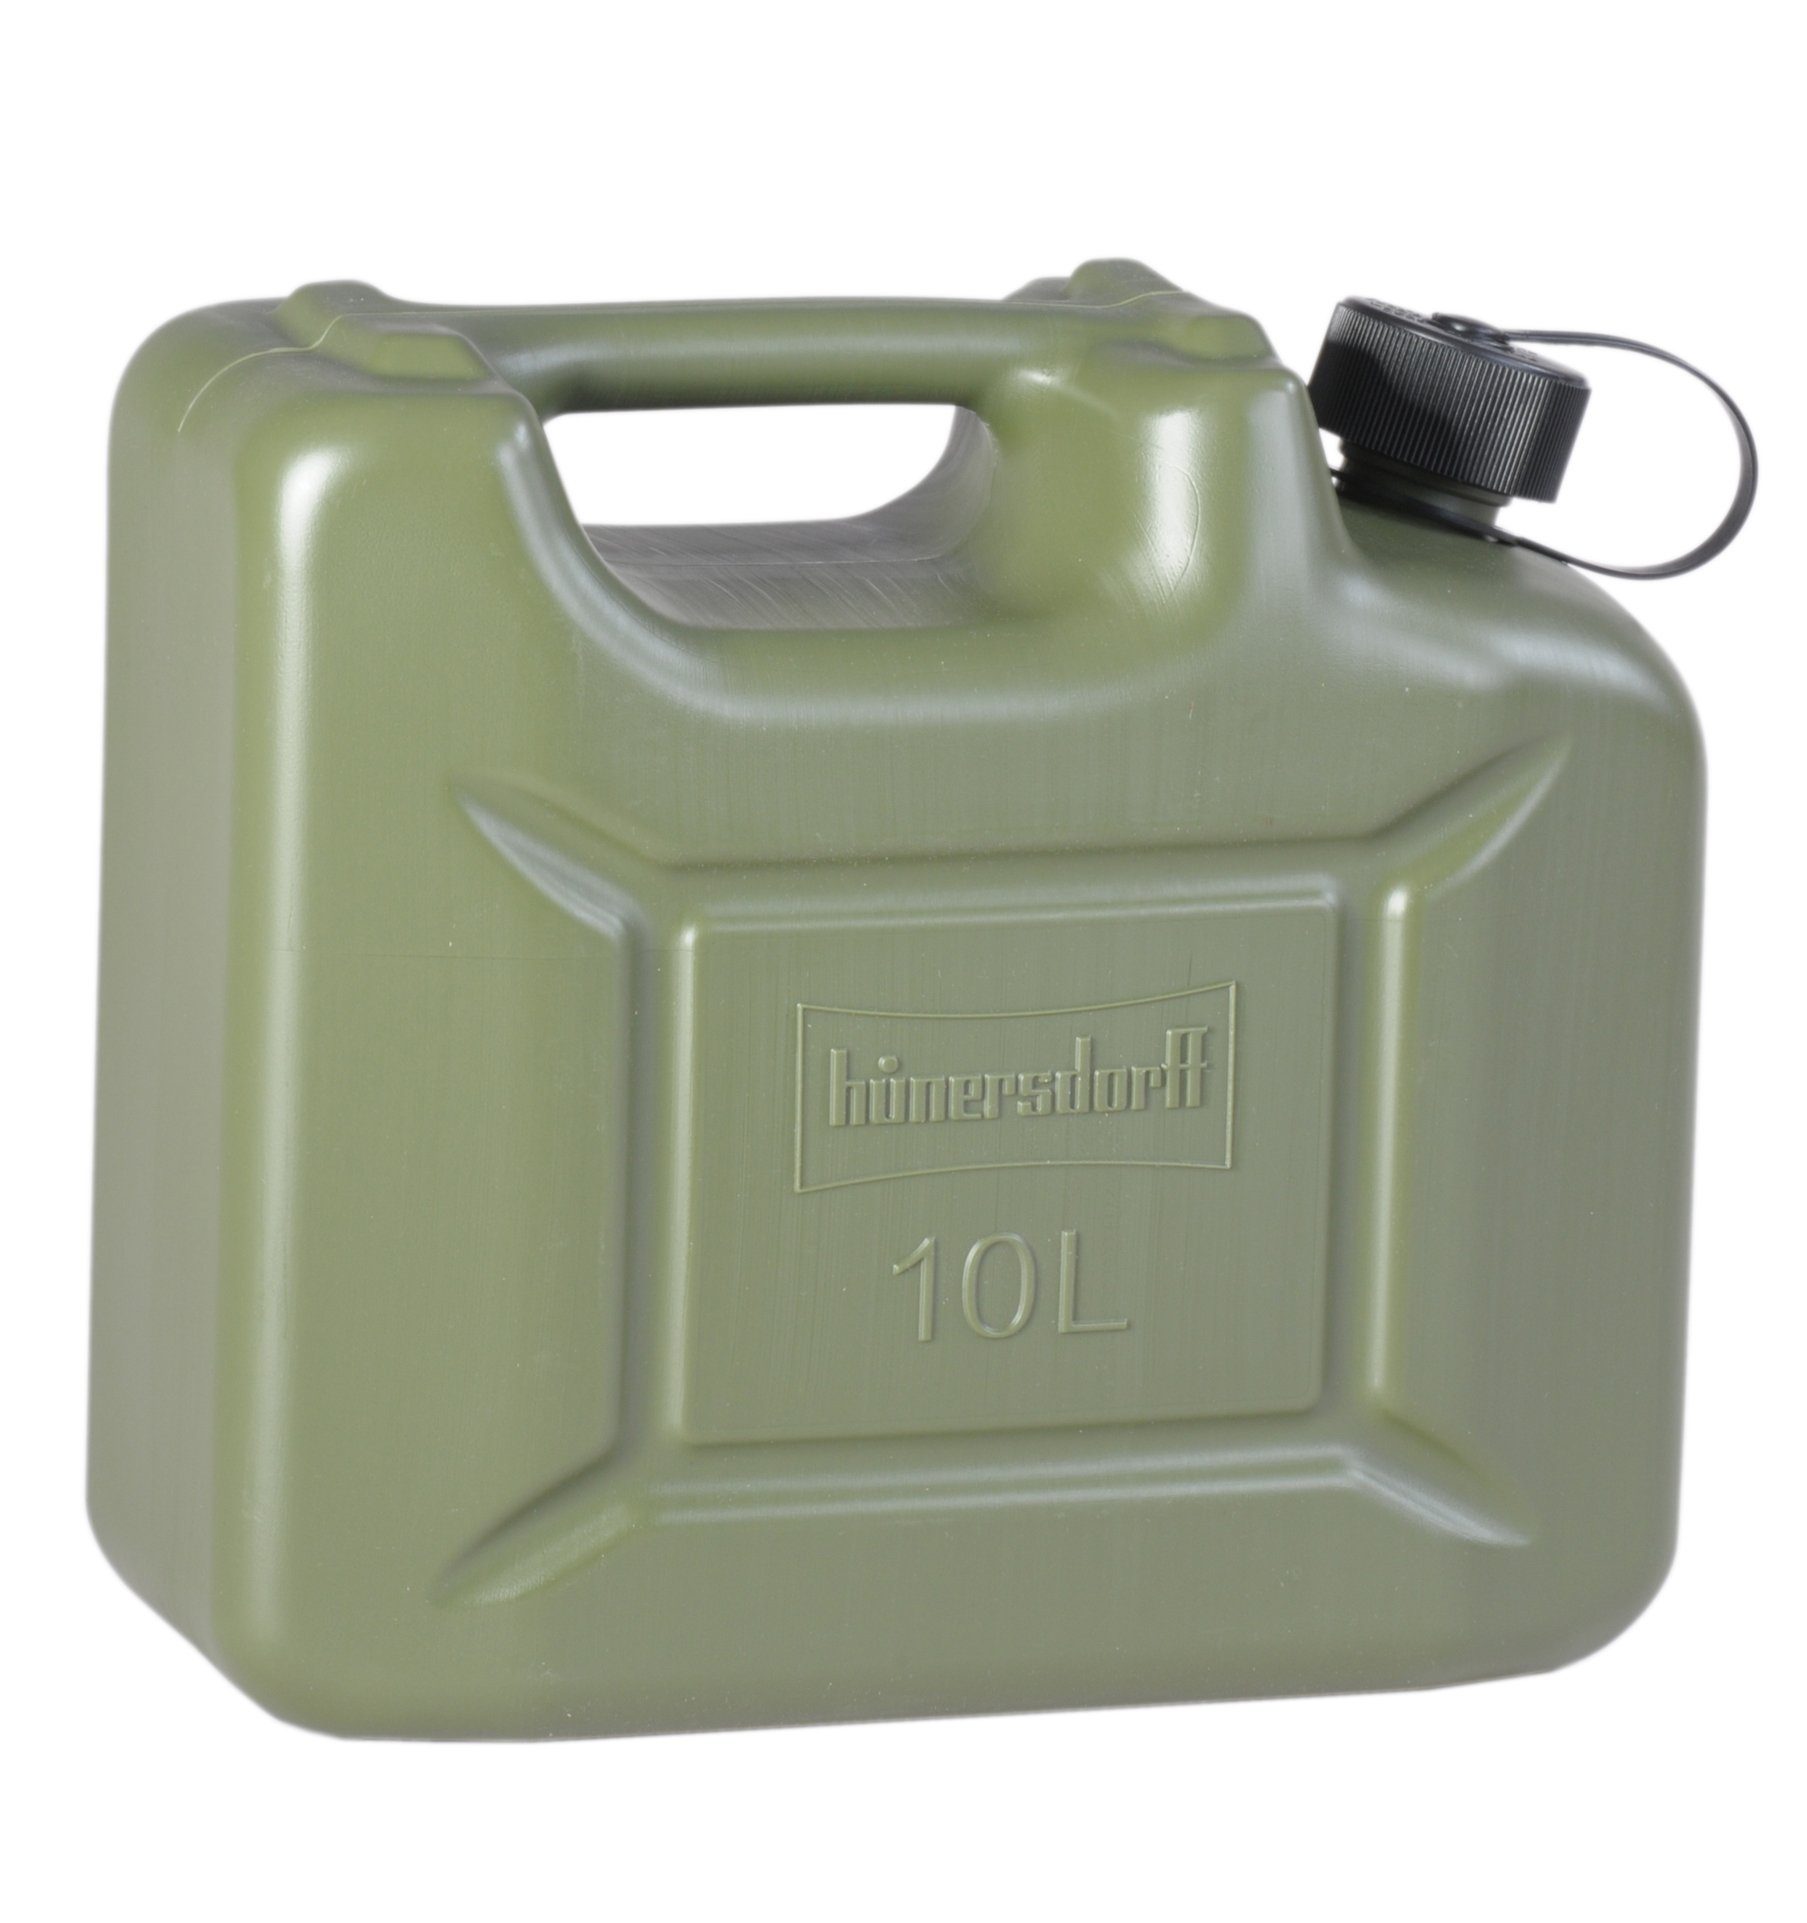 St) Kanister (1 hünersdorff Benzinkanister 10 Kunststoff Liter Olivgrün UN−Zulassung Benzin für